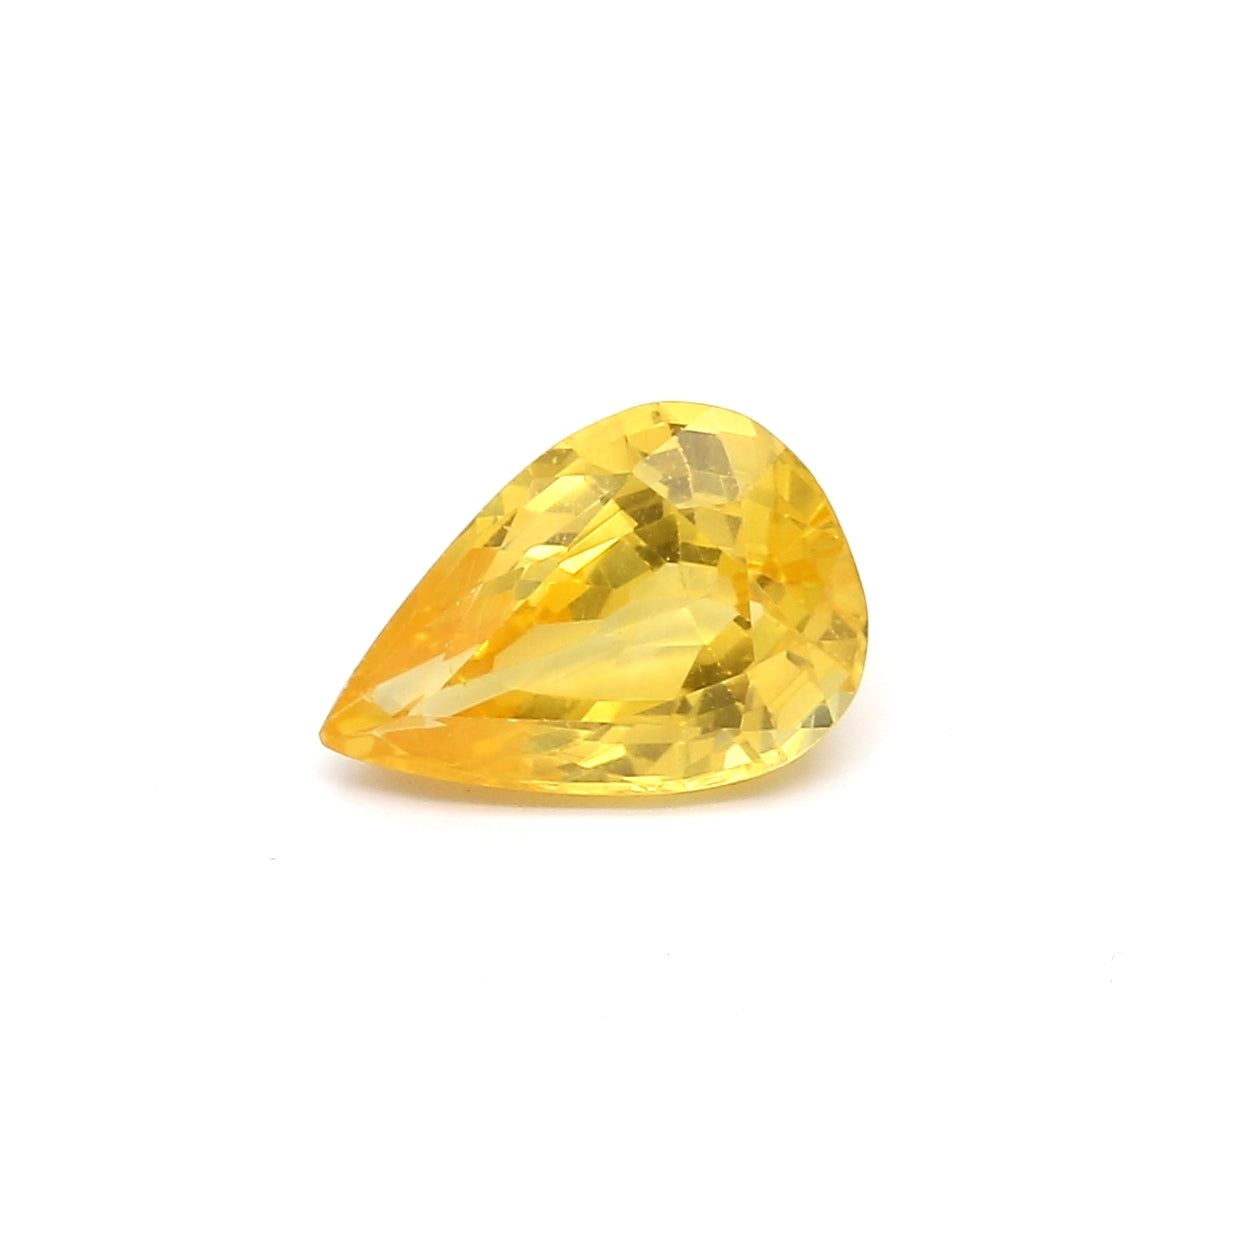 2.15ct Yellow, Pear Shape Sapphire, Heated, Sri Lanka - 9.83 x 6.83 x 4.49mm